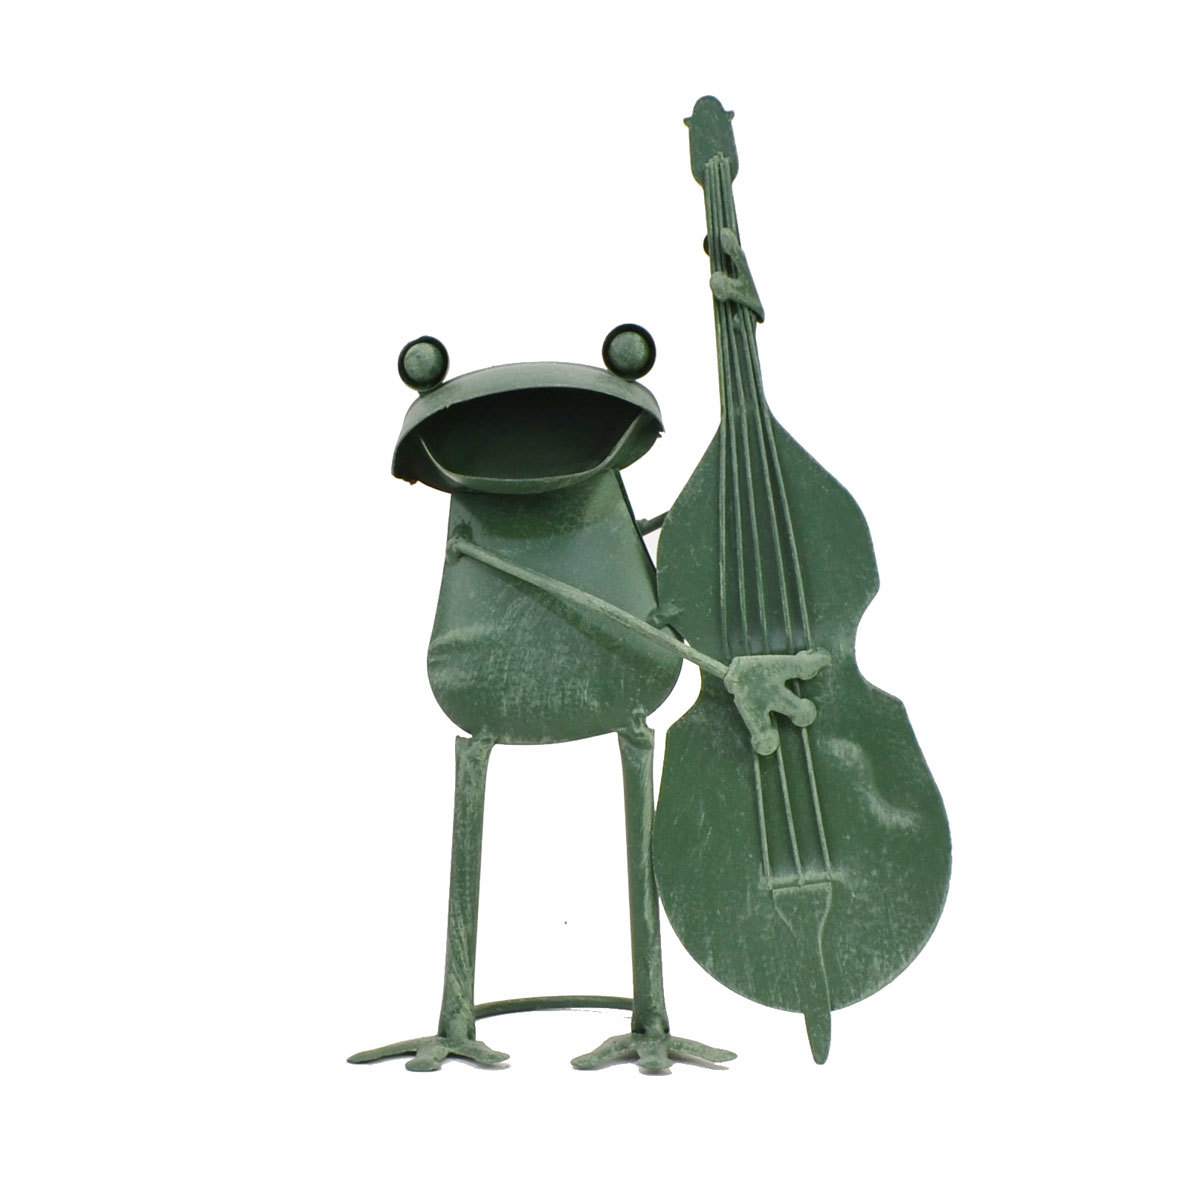 Blechserie Frosch Cello Blech Gartenfigur, Handgefertigte Artikel, Innere, Verschiedene Waren, Ornament, Objekt